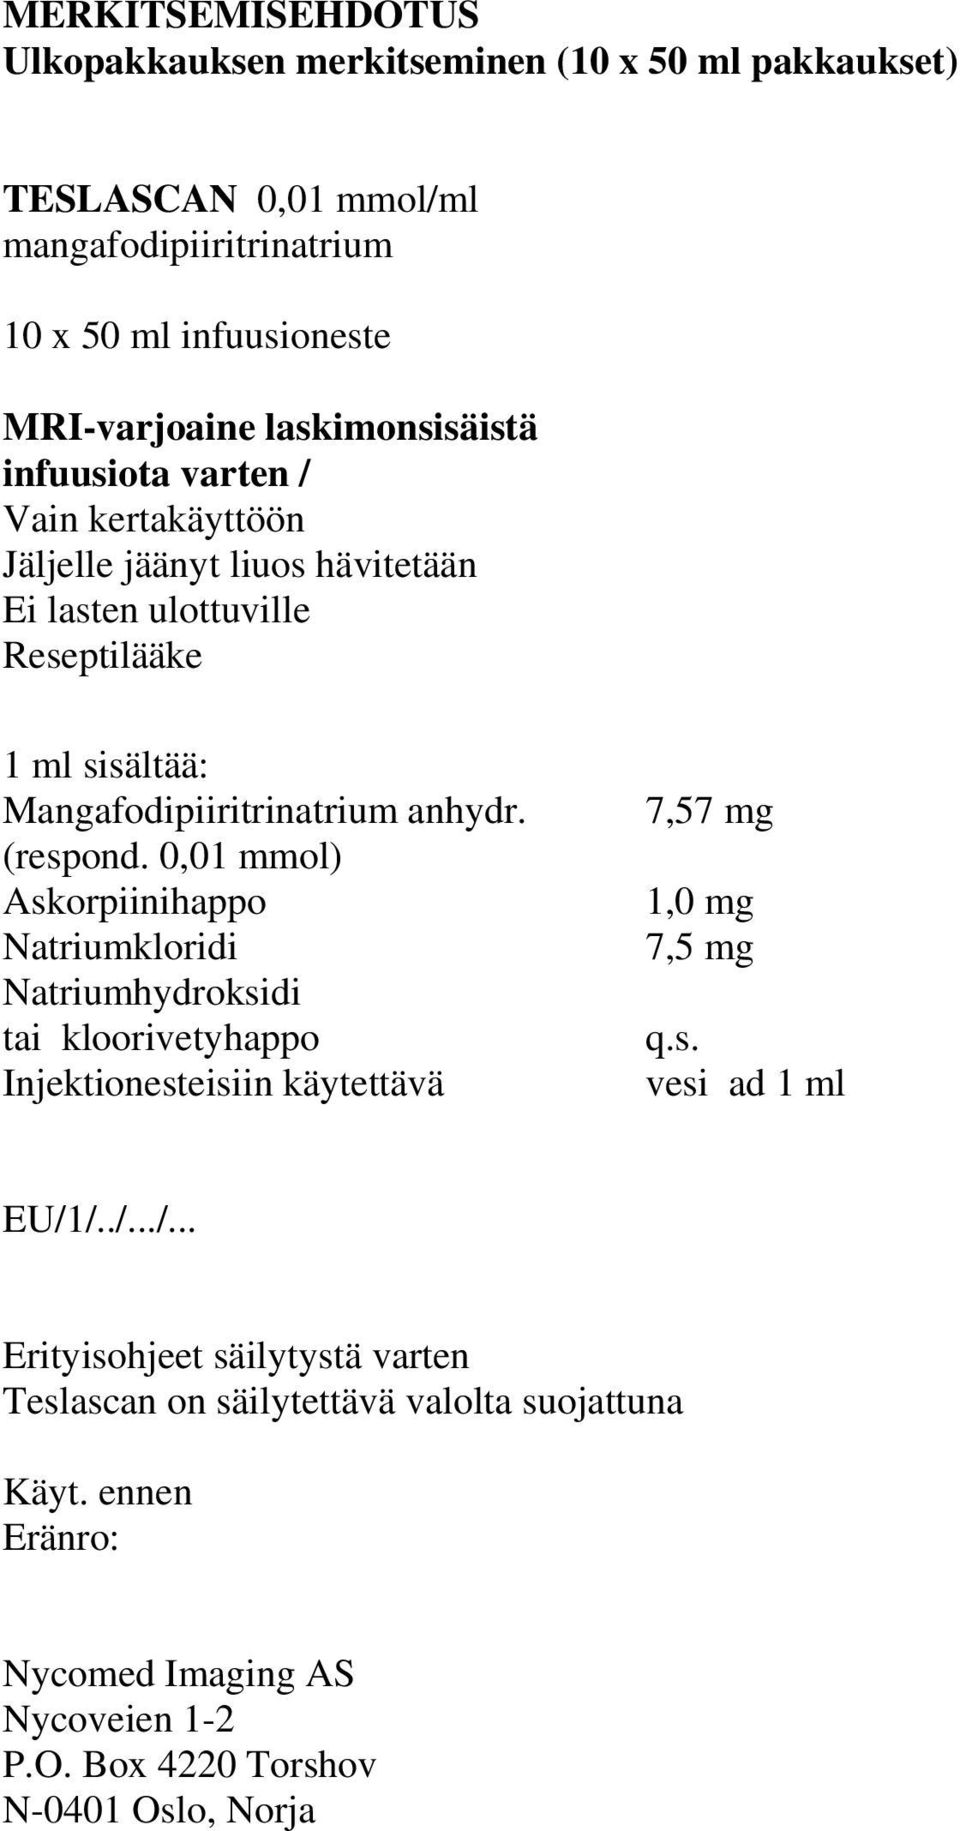 anhydr. (respond. 0,01 mmol) Askorpiinihappo Natriumkloridi Natriumhydroksidi tai kloorivetyhappo Injektionesteisiin käytettävä 7,57 mg 1,0 mg 7,5 mg q.s. vesi ad 1 ml EU/1/.